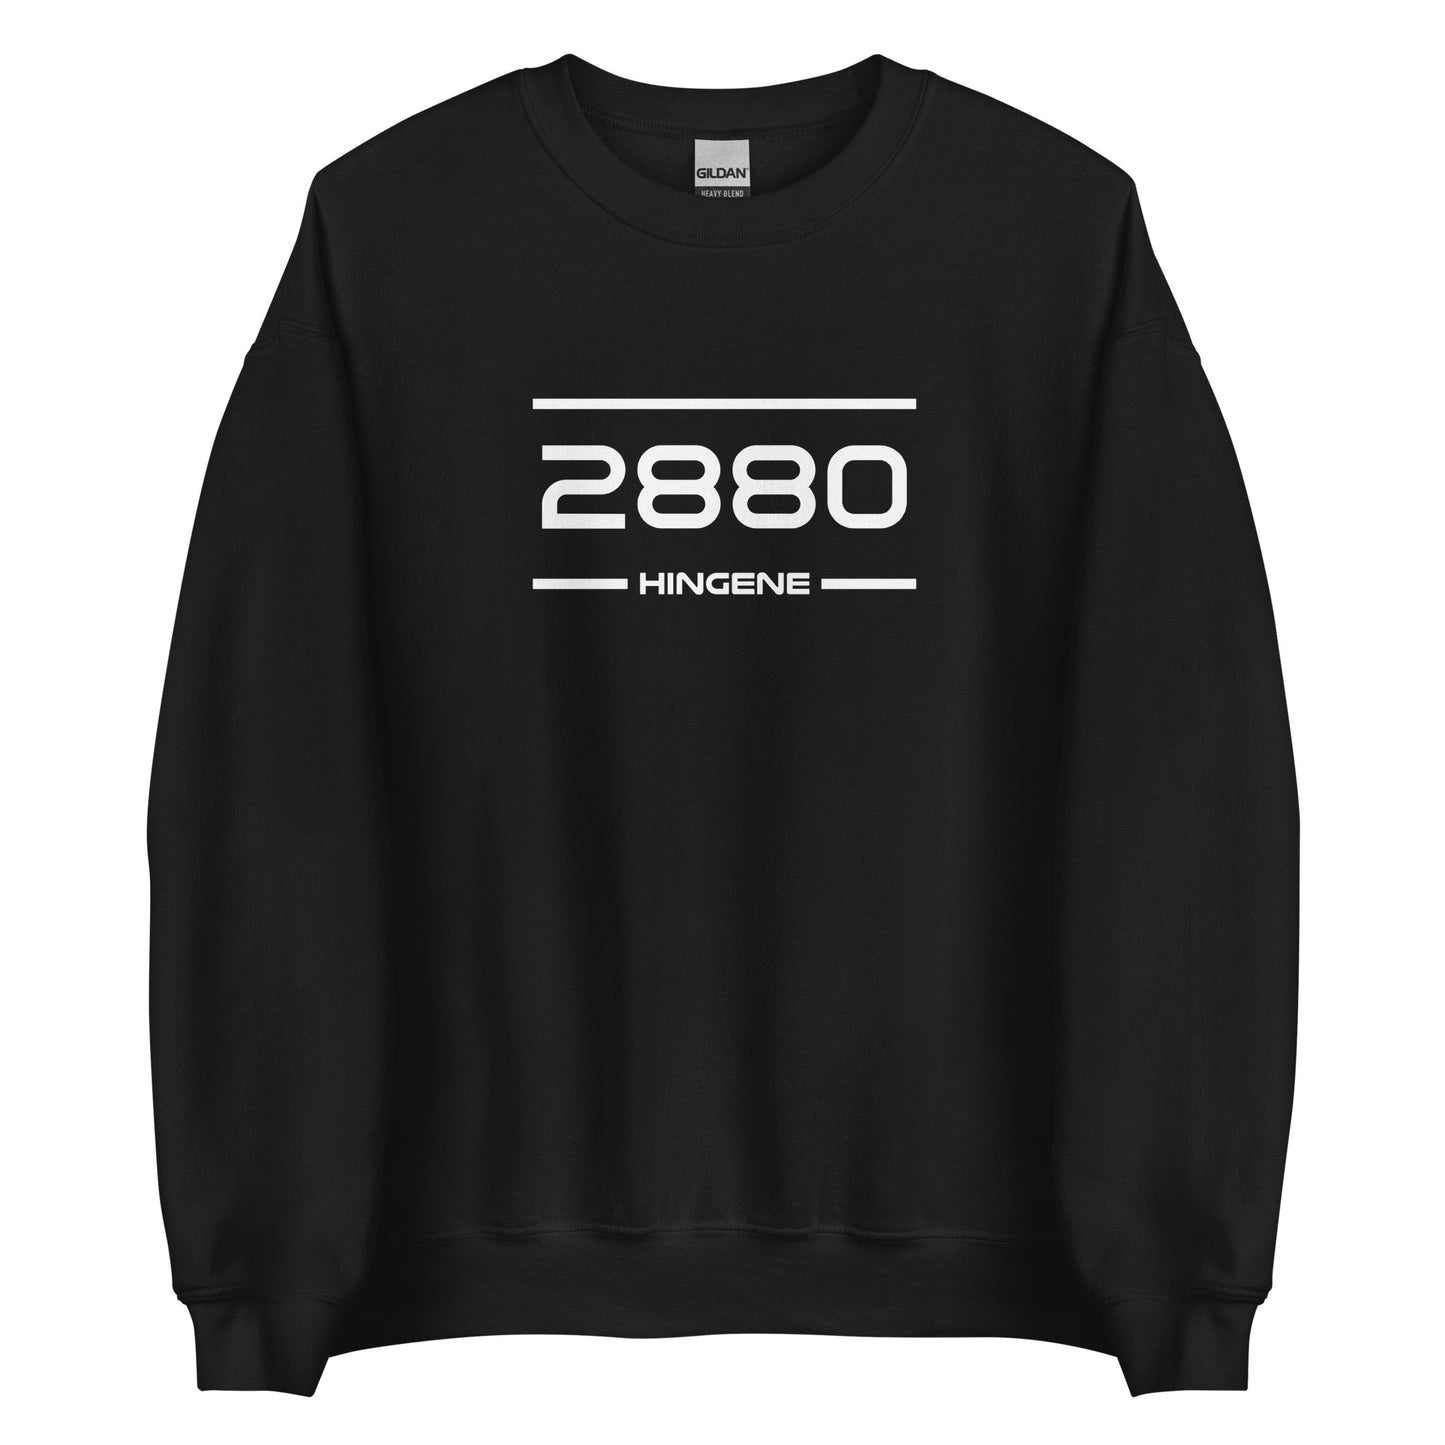 Sweater - 2880 - Hingene (M/V)